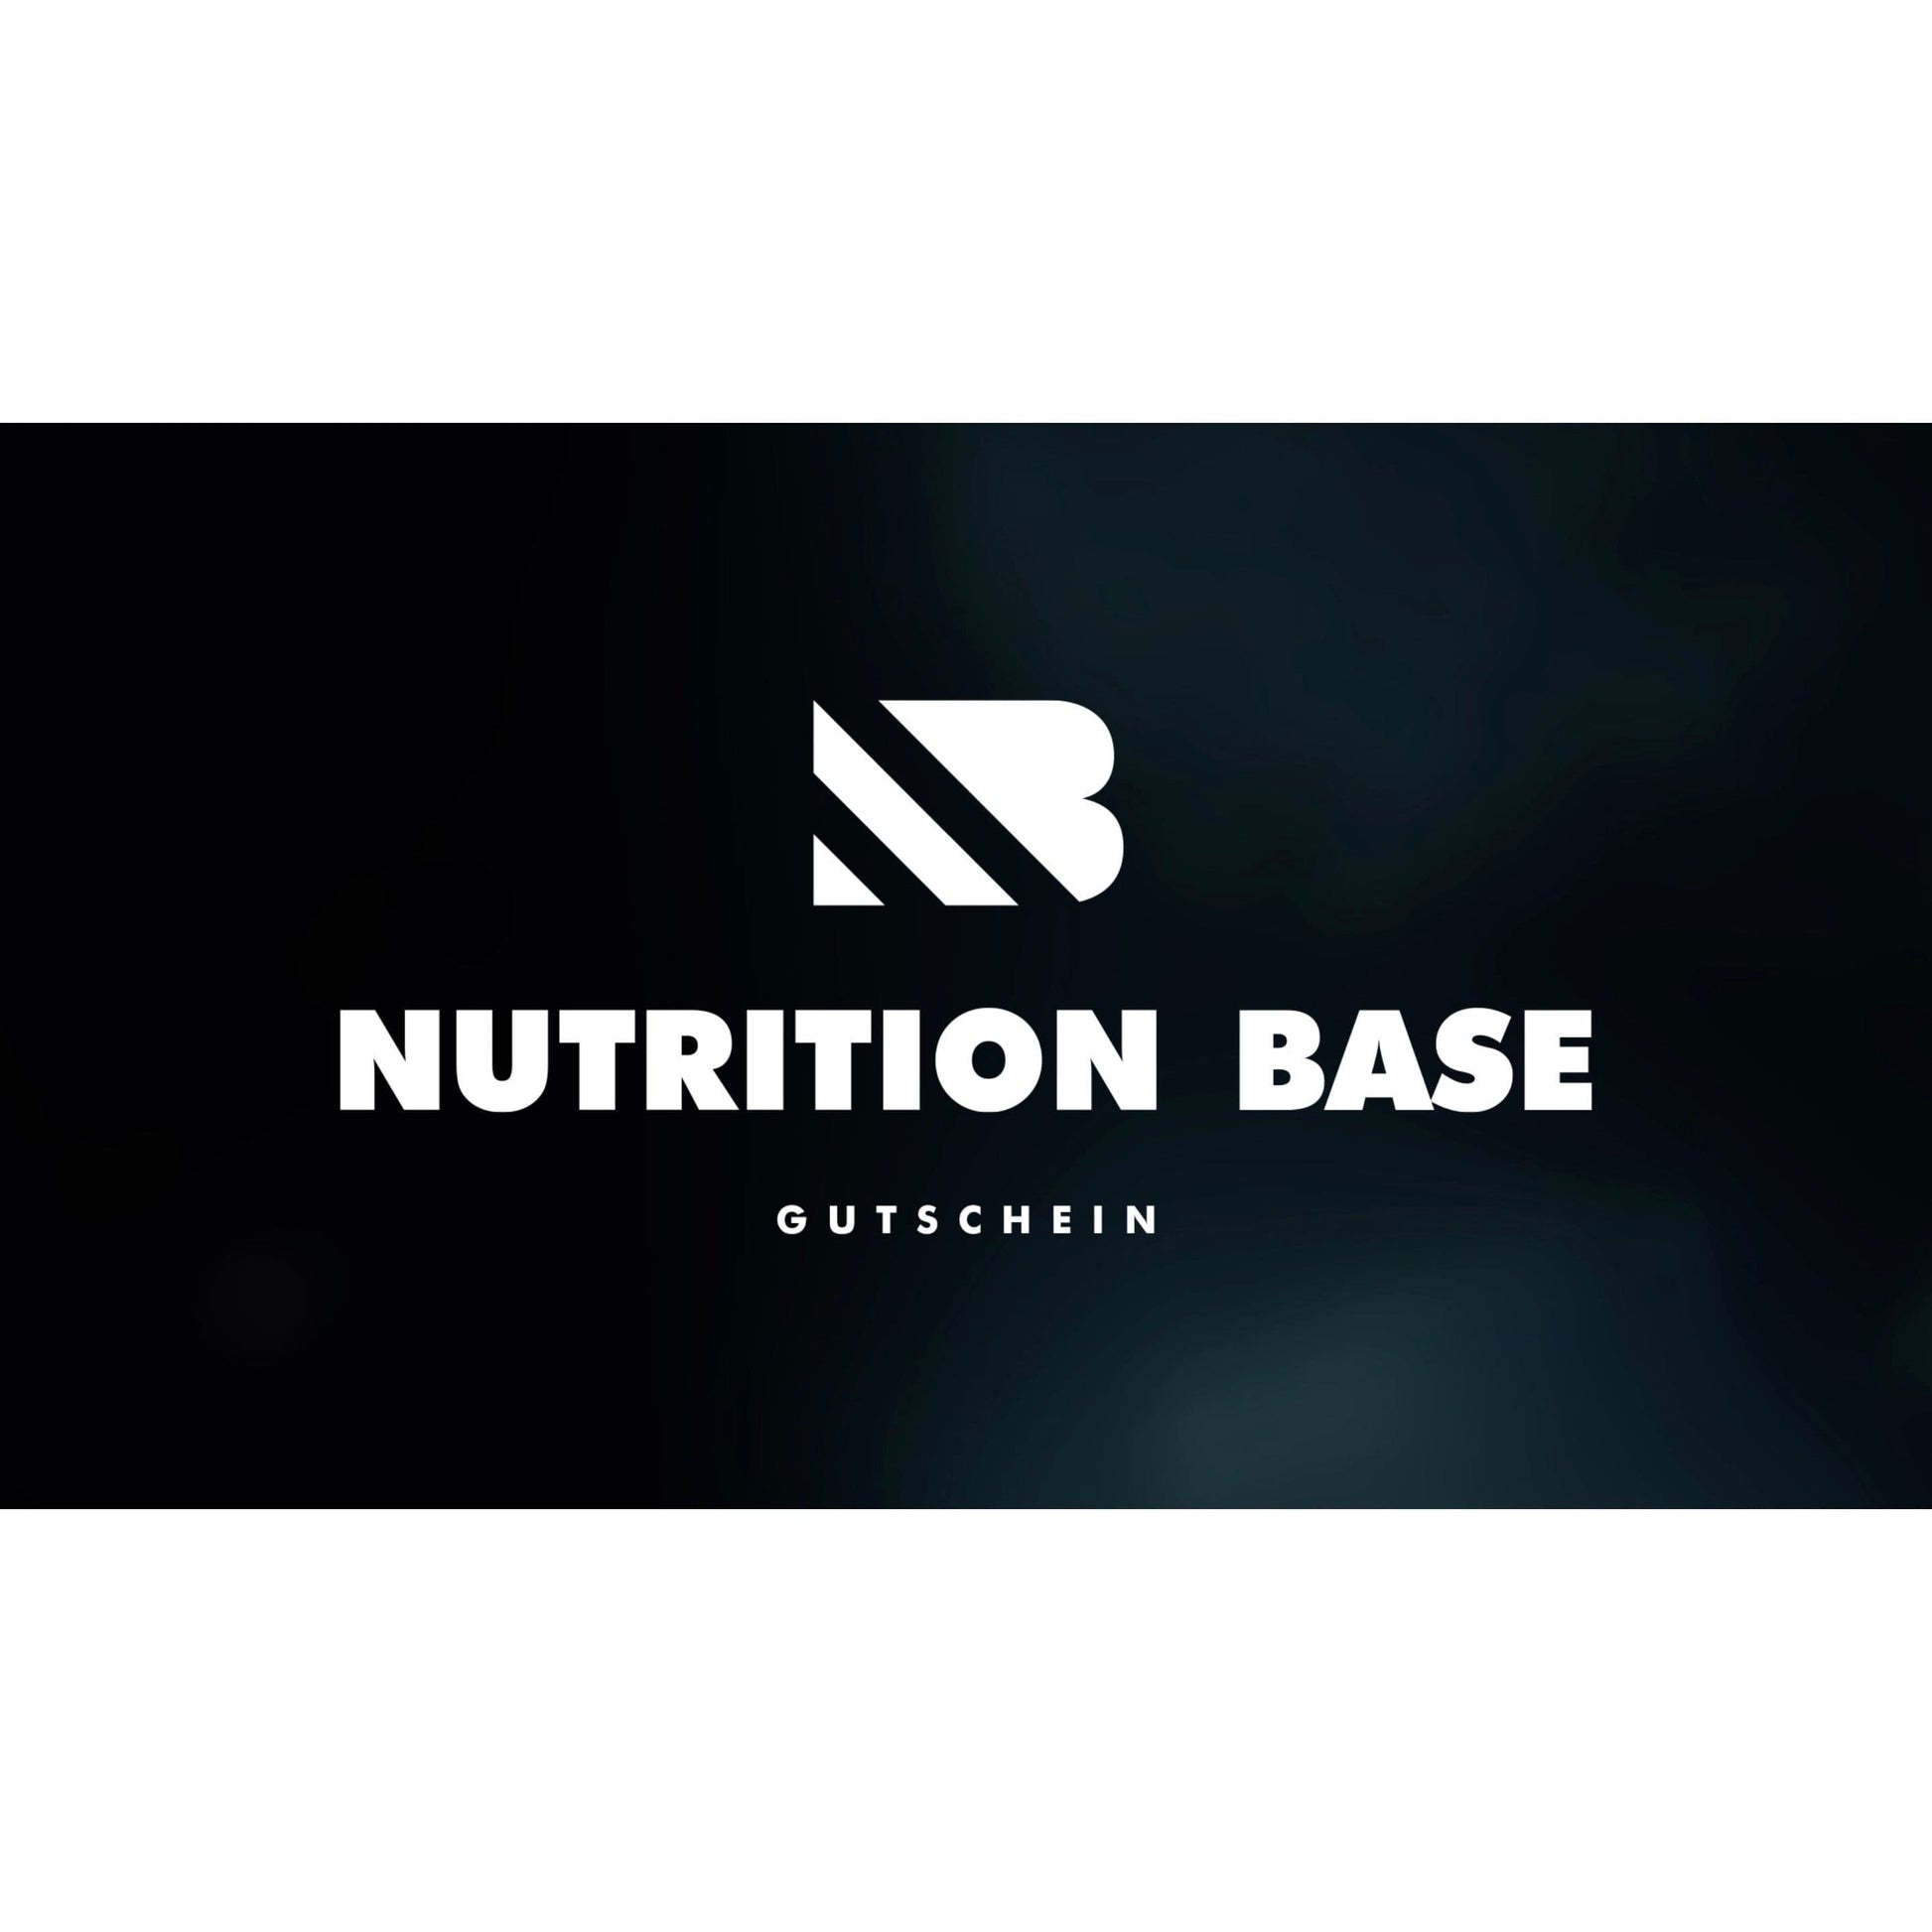 Nutrition Base Gutschein.